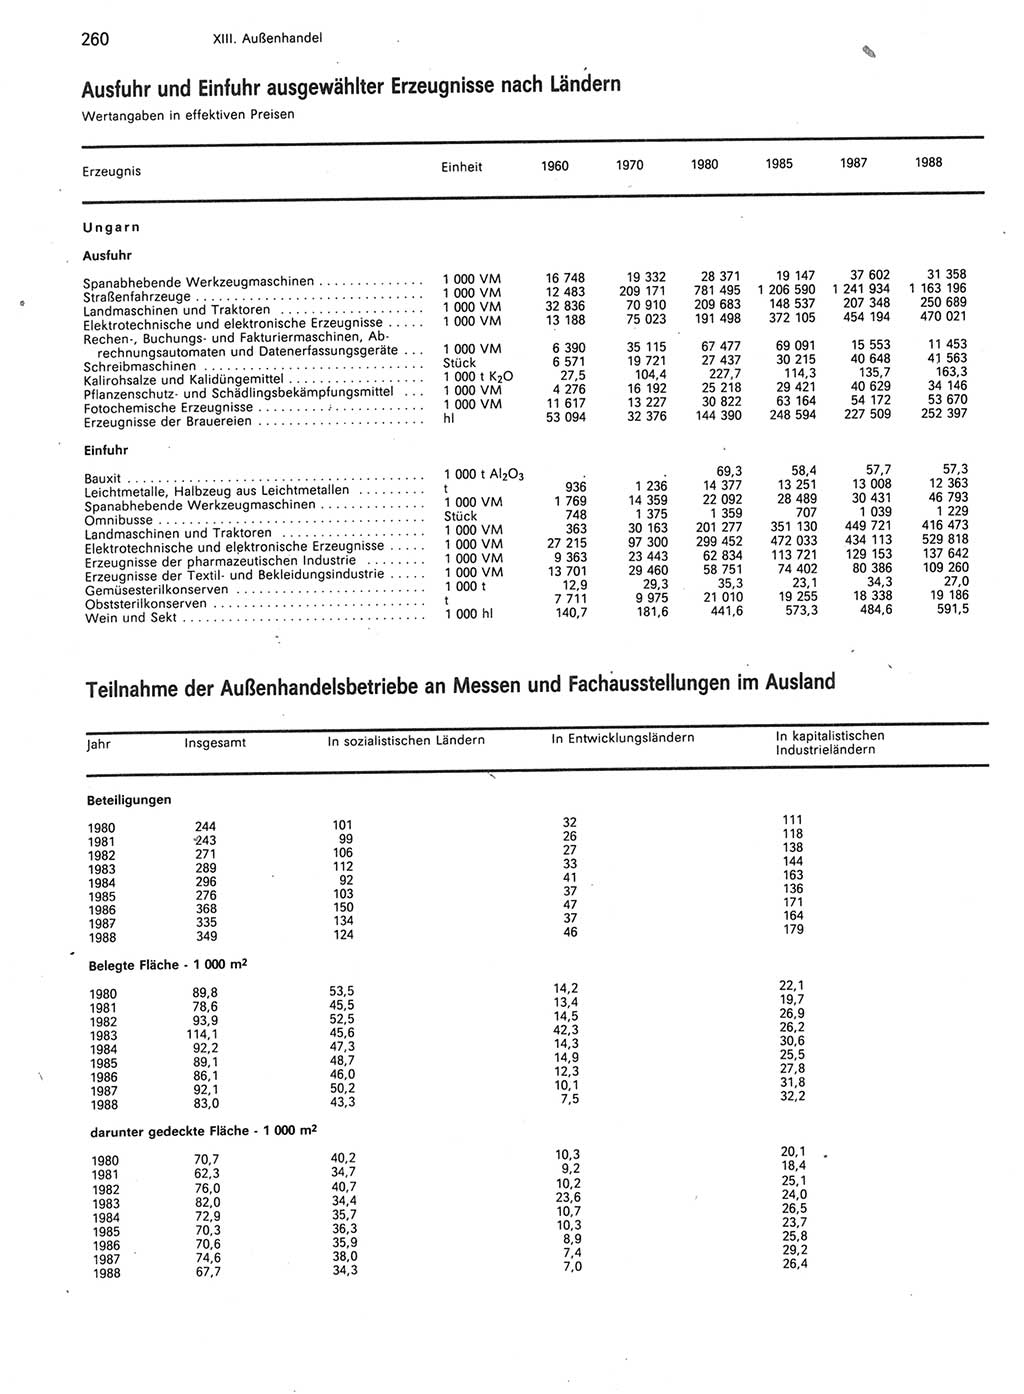 Statistisches Jahrbuch der Deutschen Demokratischen Republik (DDR) 1989, Seite 260 (Stat. Jb. DDR 1989, S. 260)